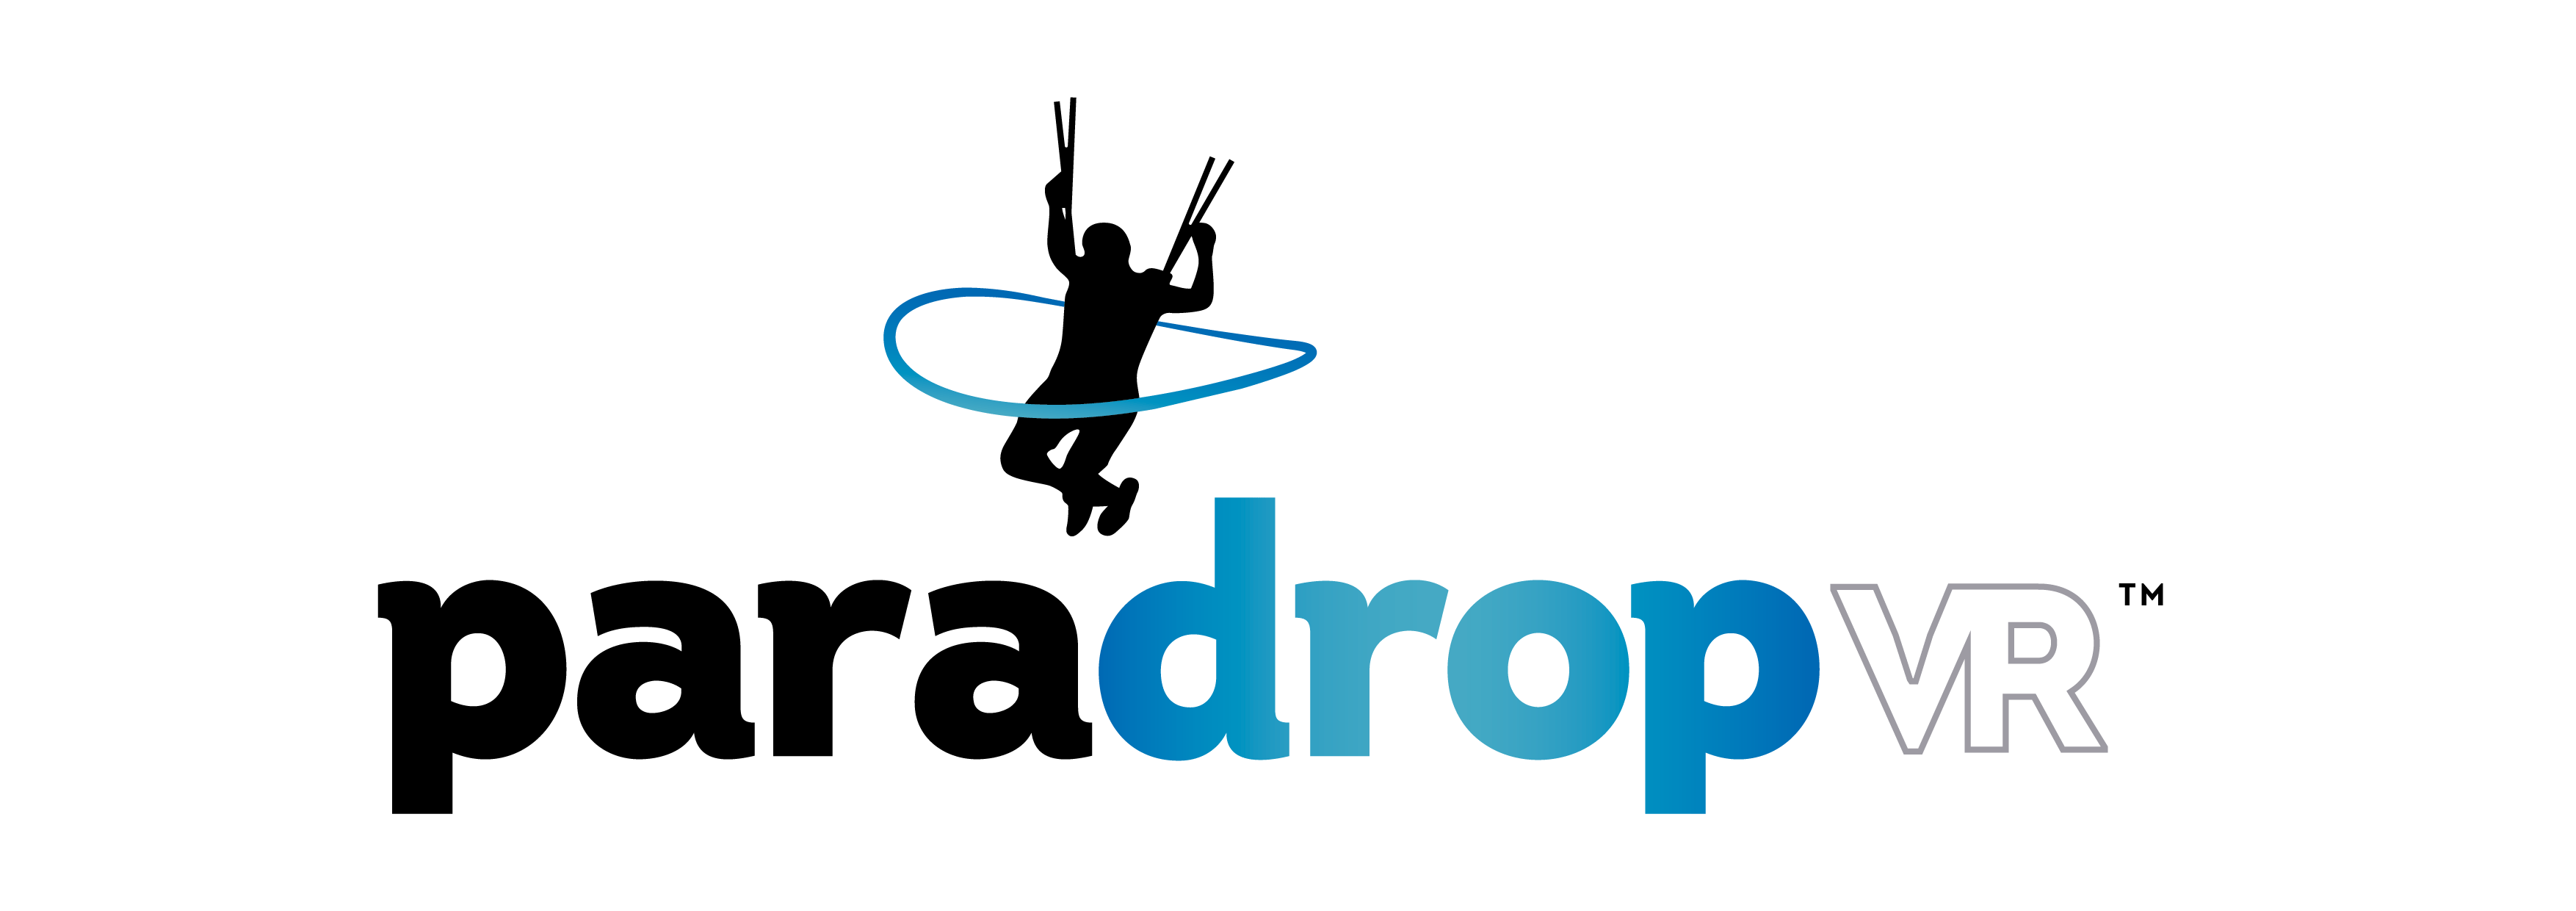 Paradrop VR_Logo Export_V2_Pos-2